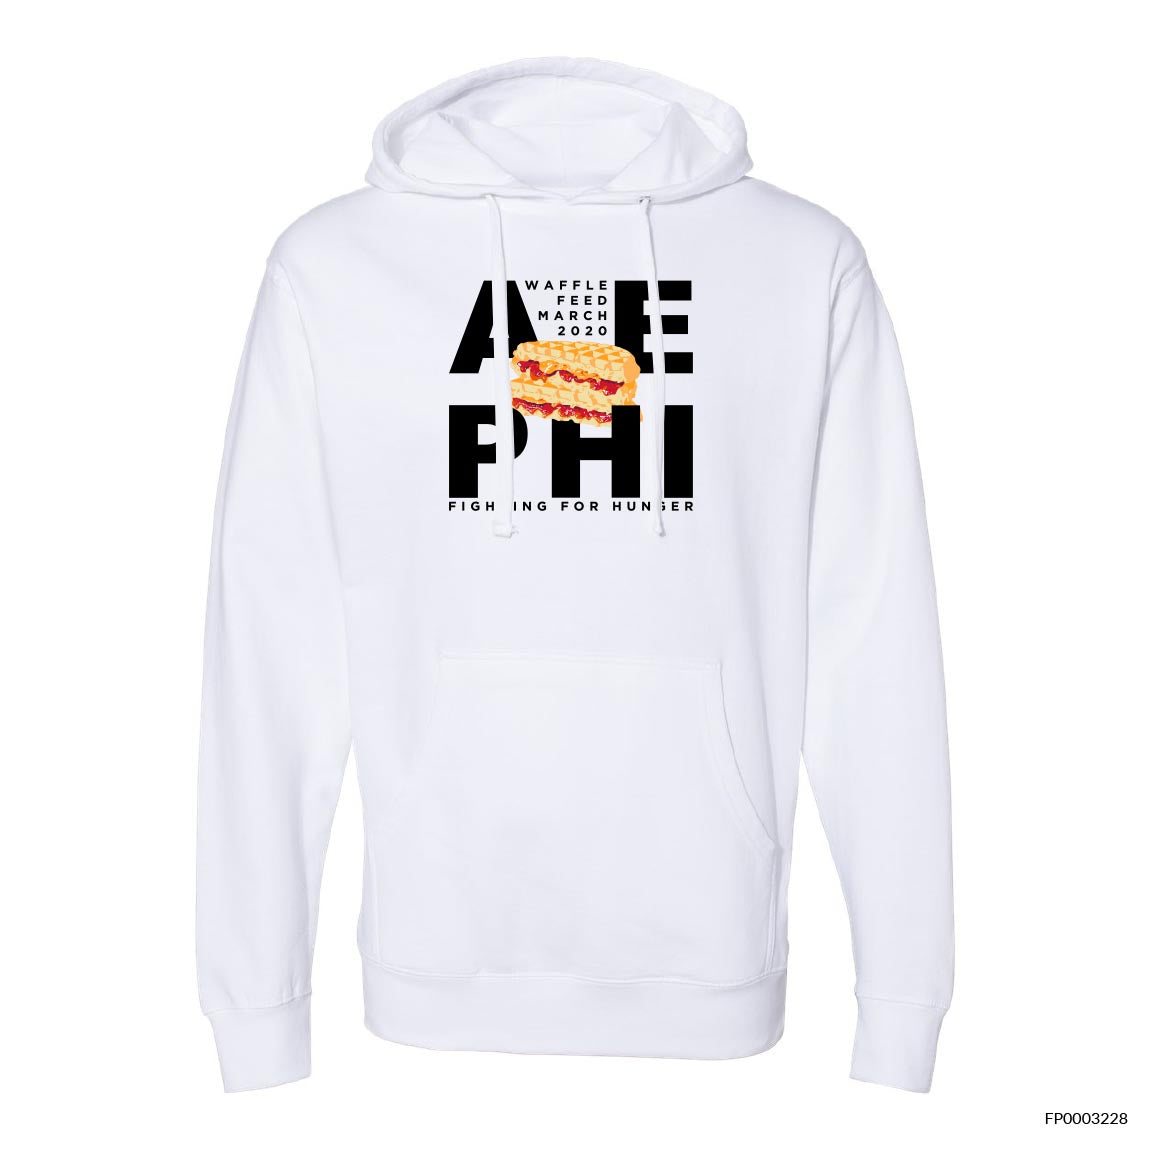 Waffle Feed